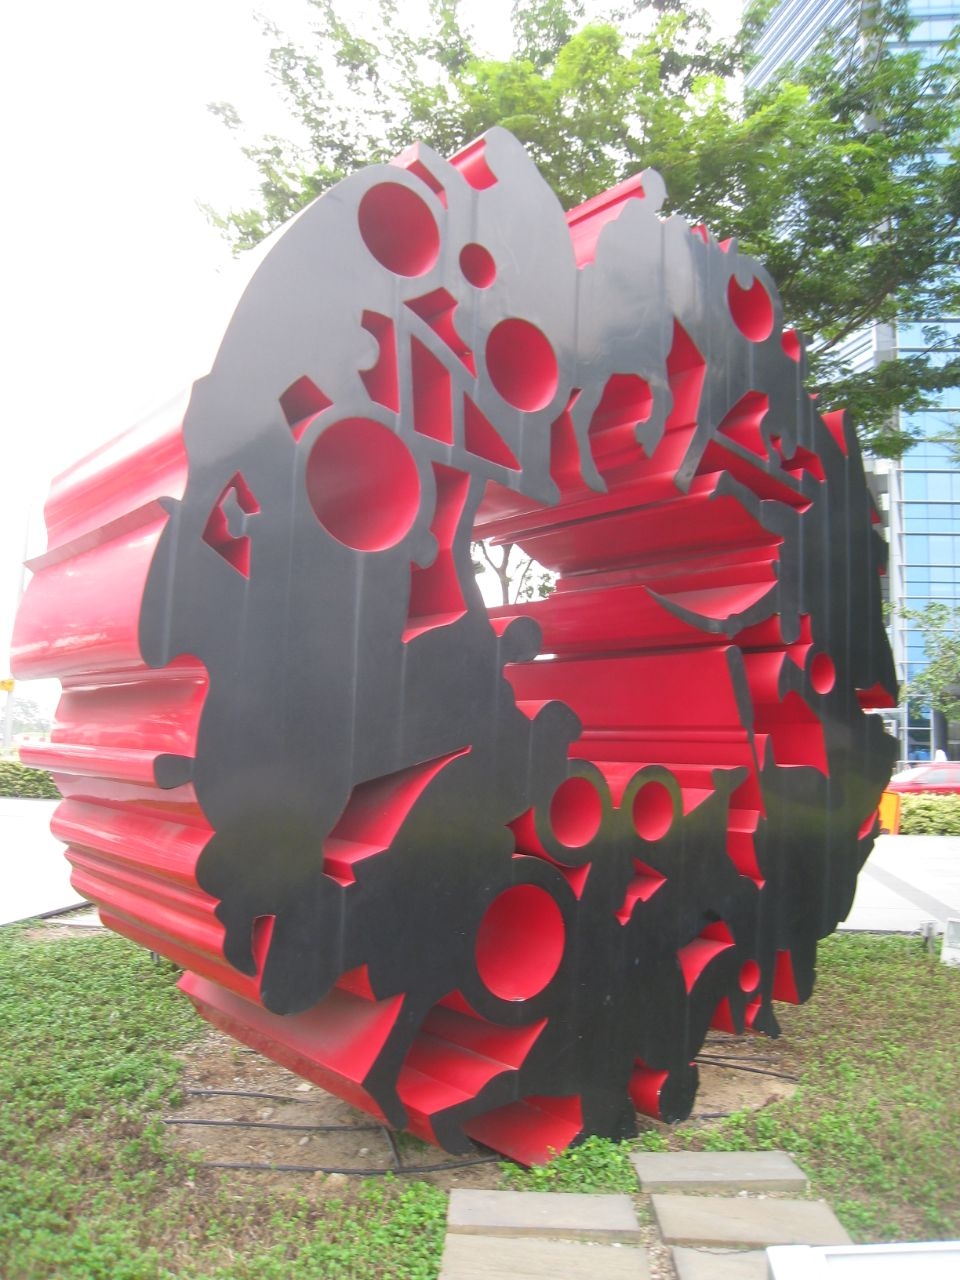 Городская скульптура вдоль набережной реки Сингапур (столица), Сингапур (город-государство)